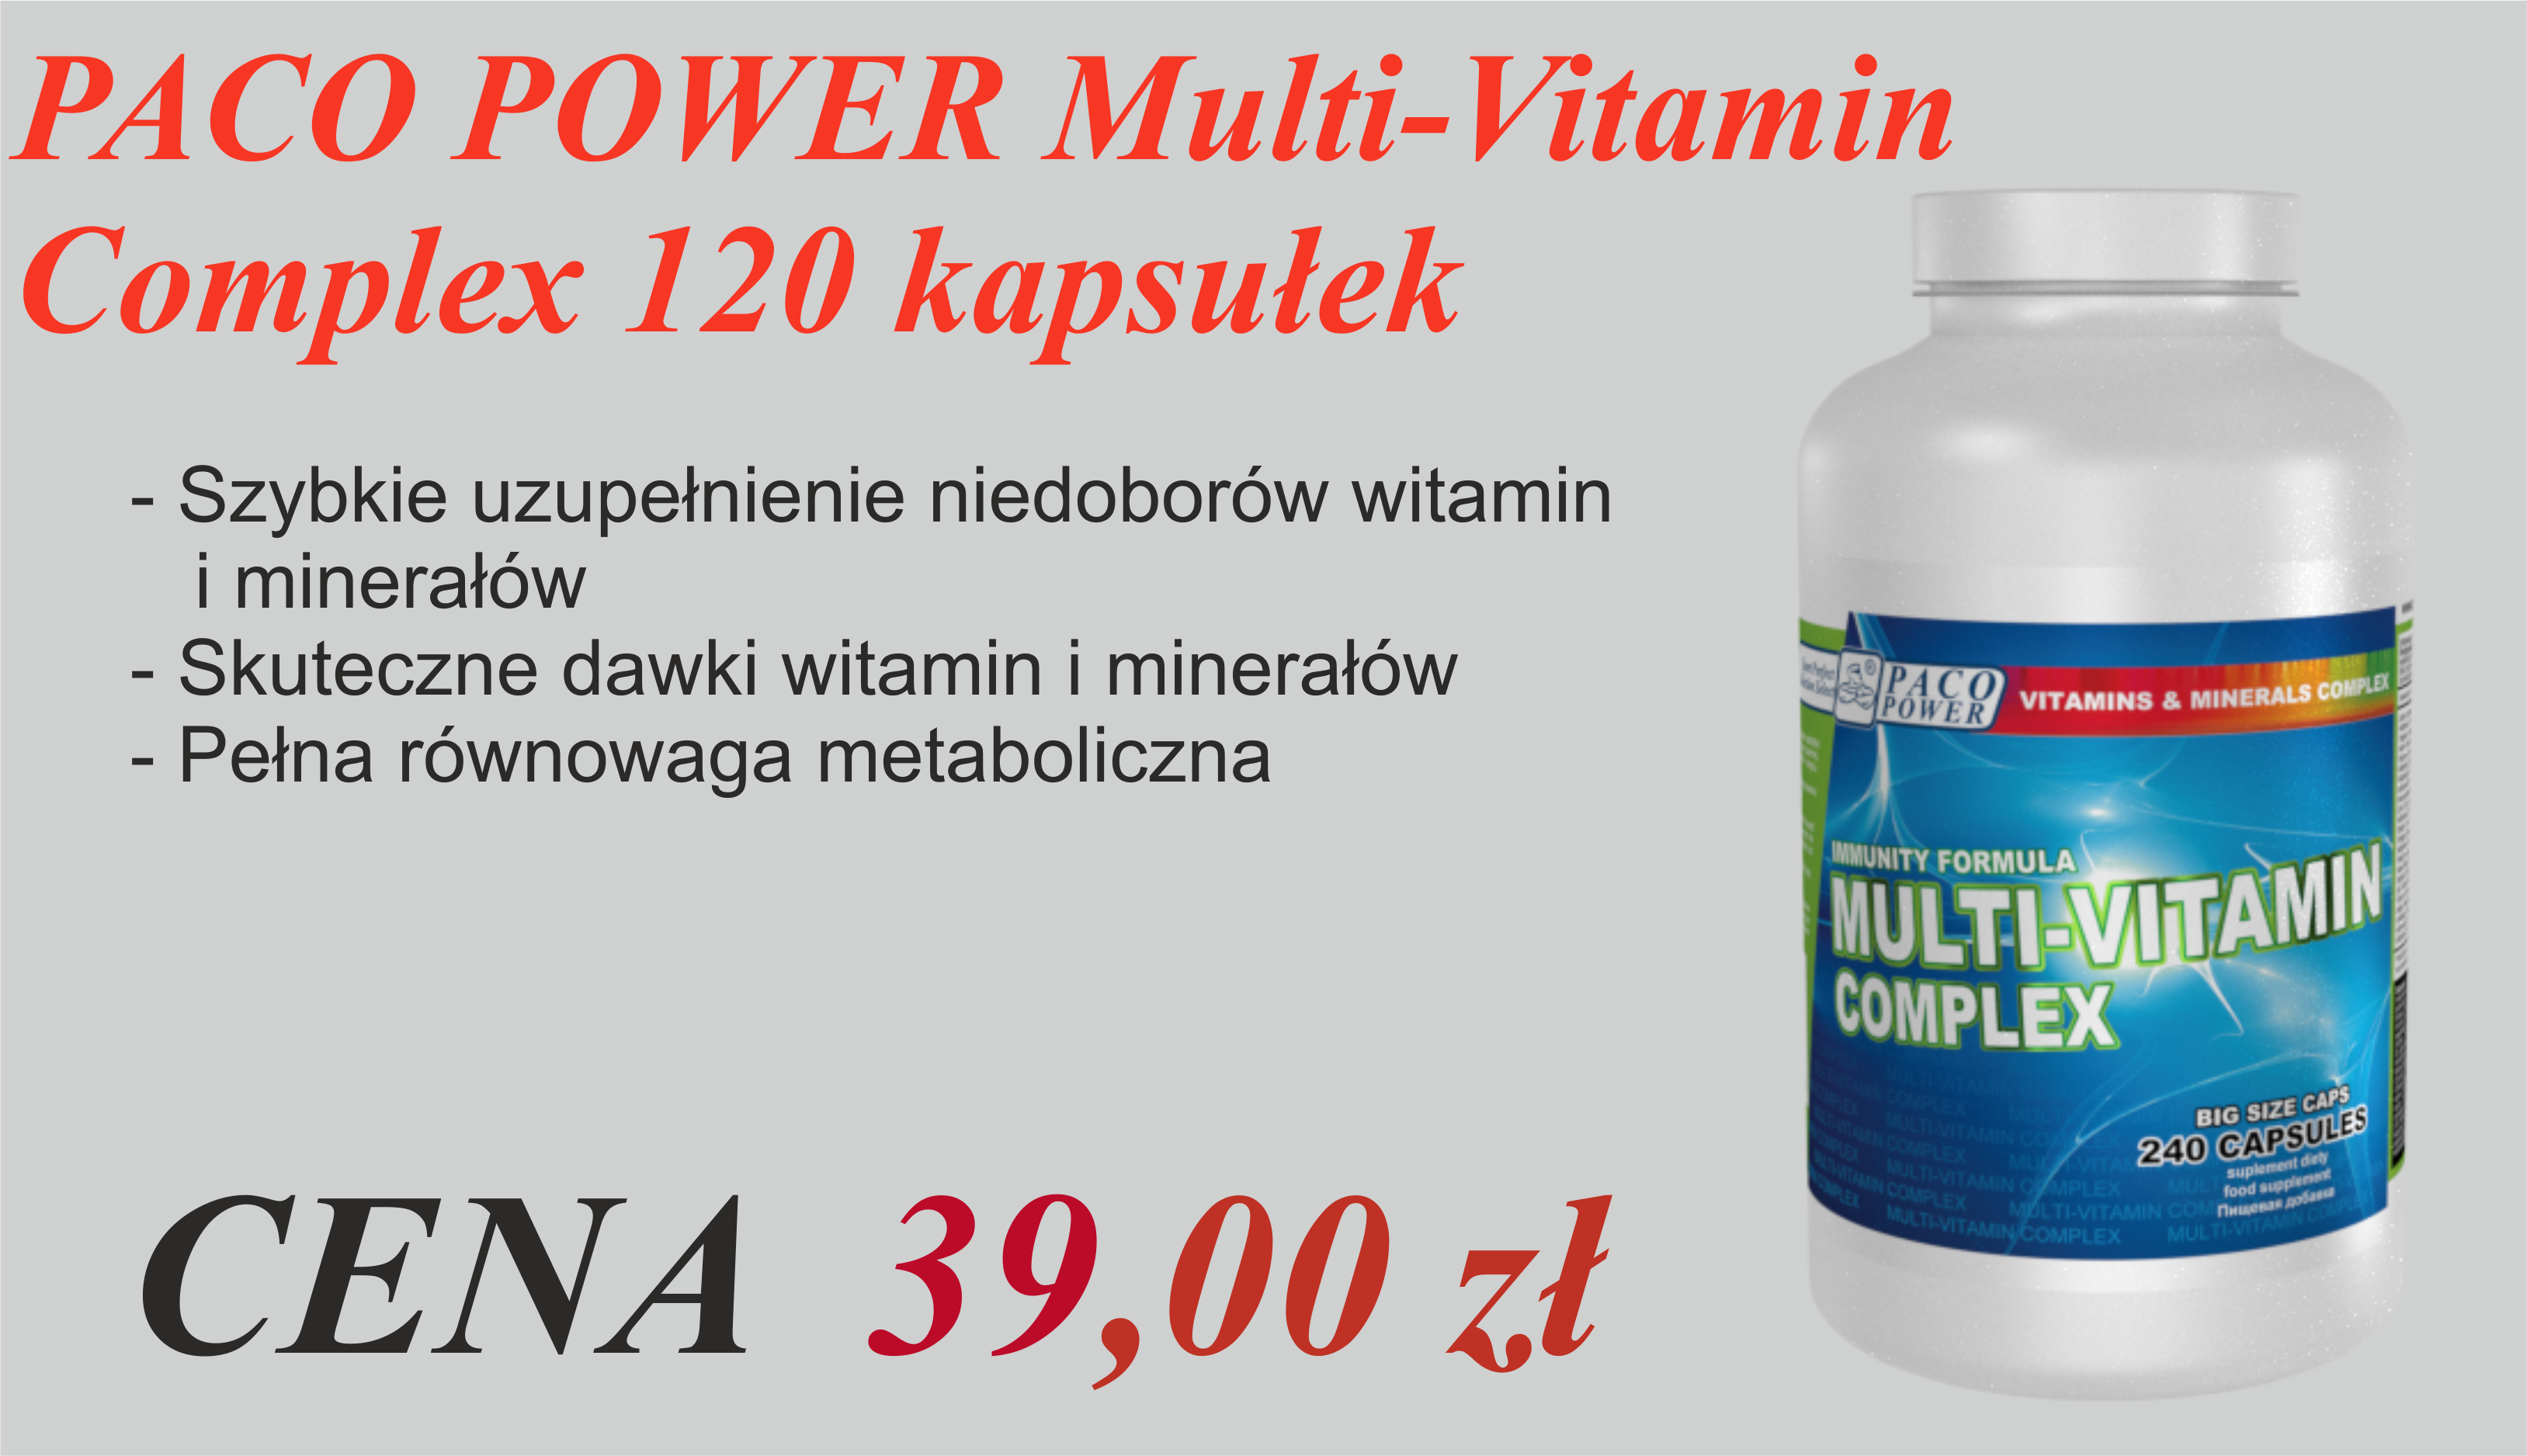 PACO POWER Multi-Vitamin